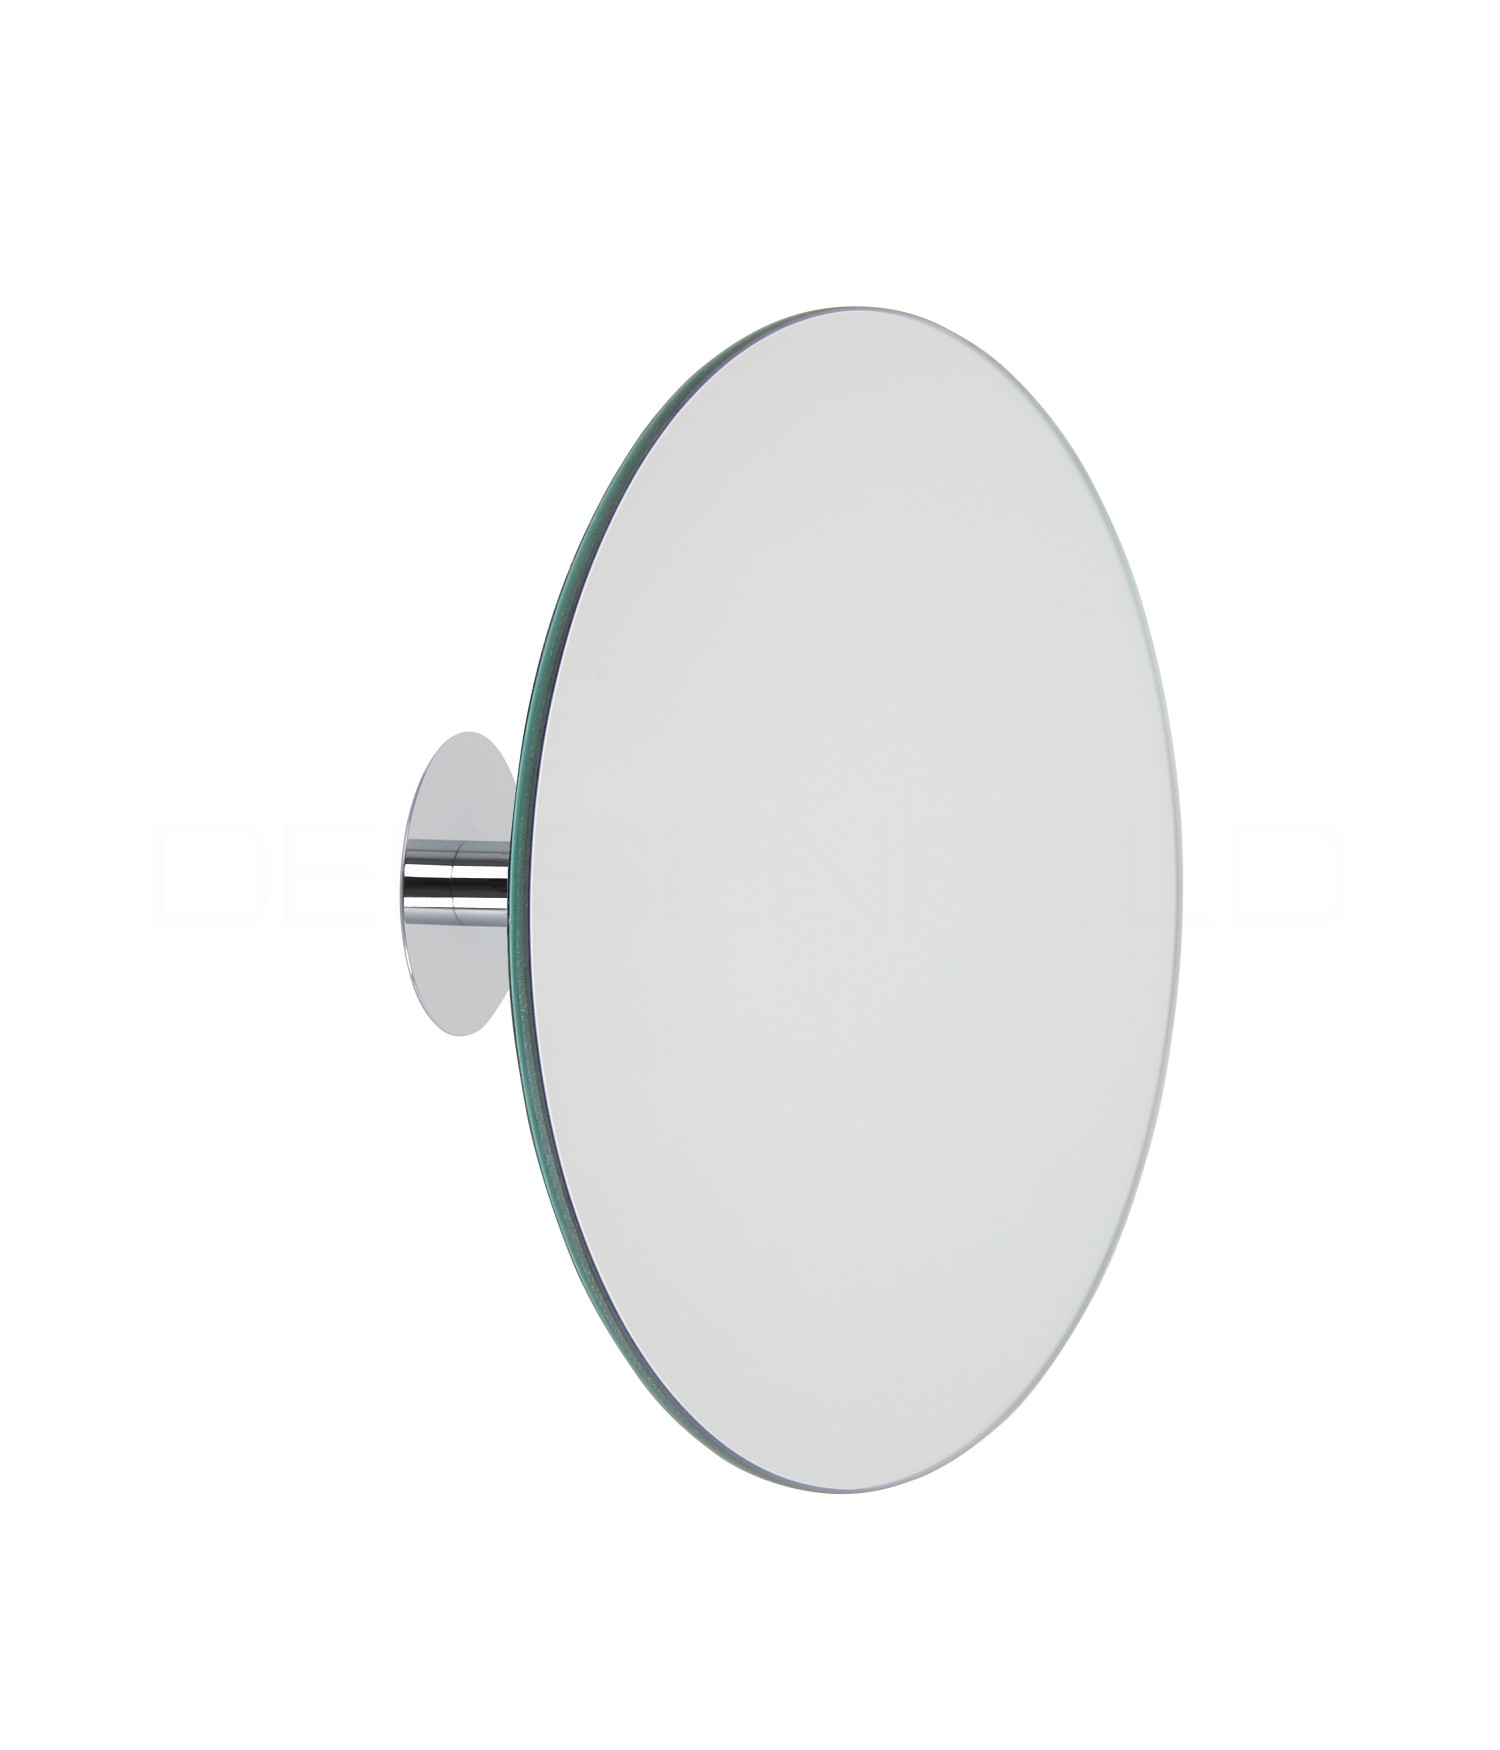 Gelco 705913 aktuellen Kosmetikspiegel zum Hinstellen Metall Chrom 34 x 18 x 3,5 cm